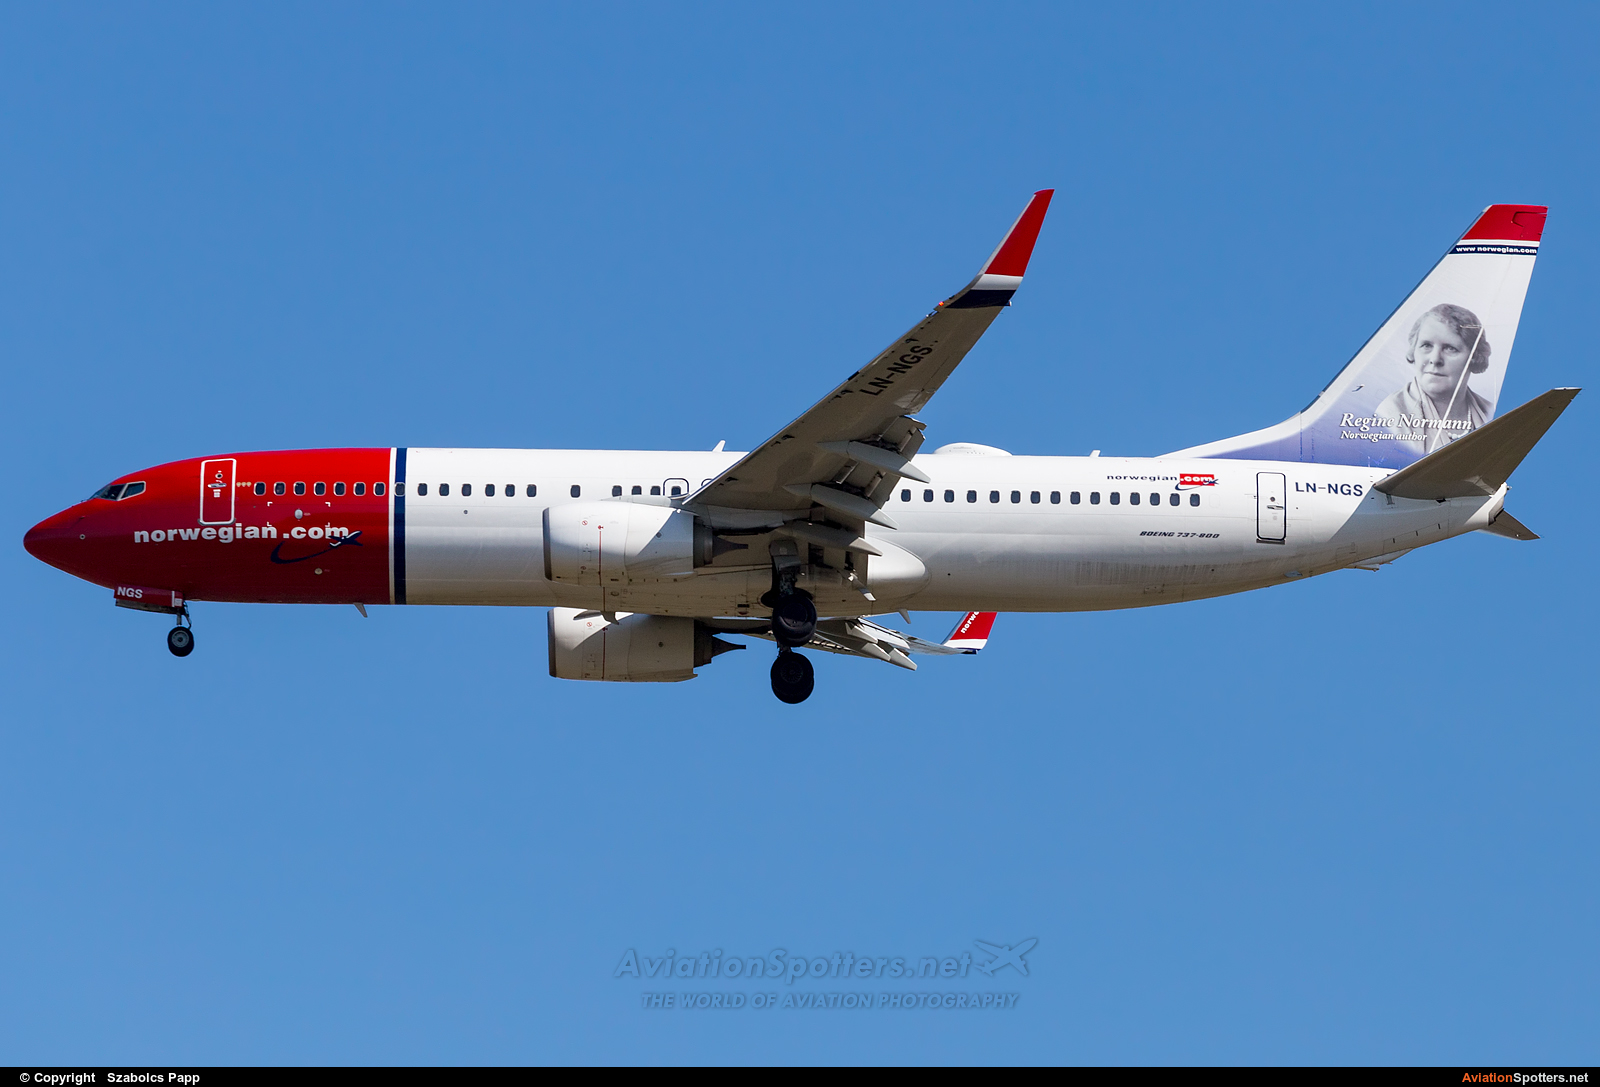 Norwegian Air Shuttle  -  737-800  (LN-NGS) By Szabolcs Papp (mr.szabi)